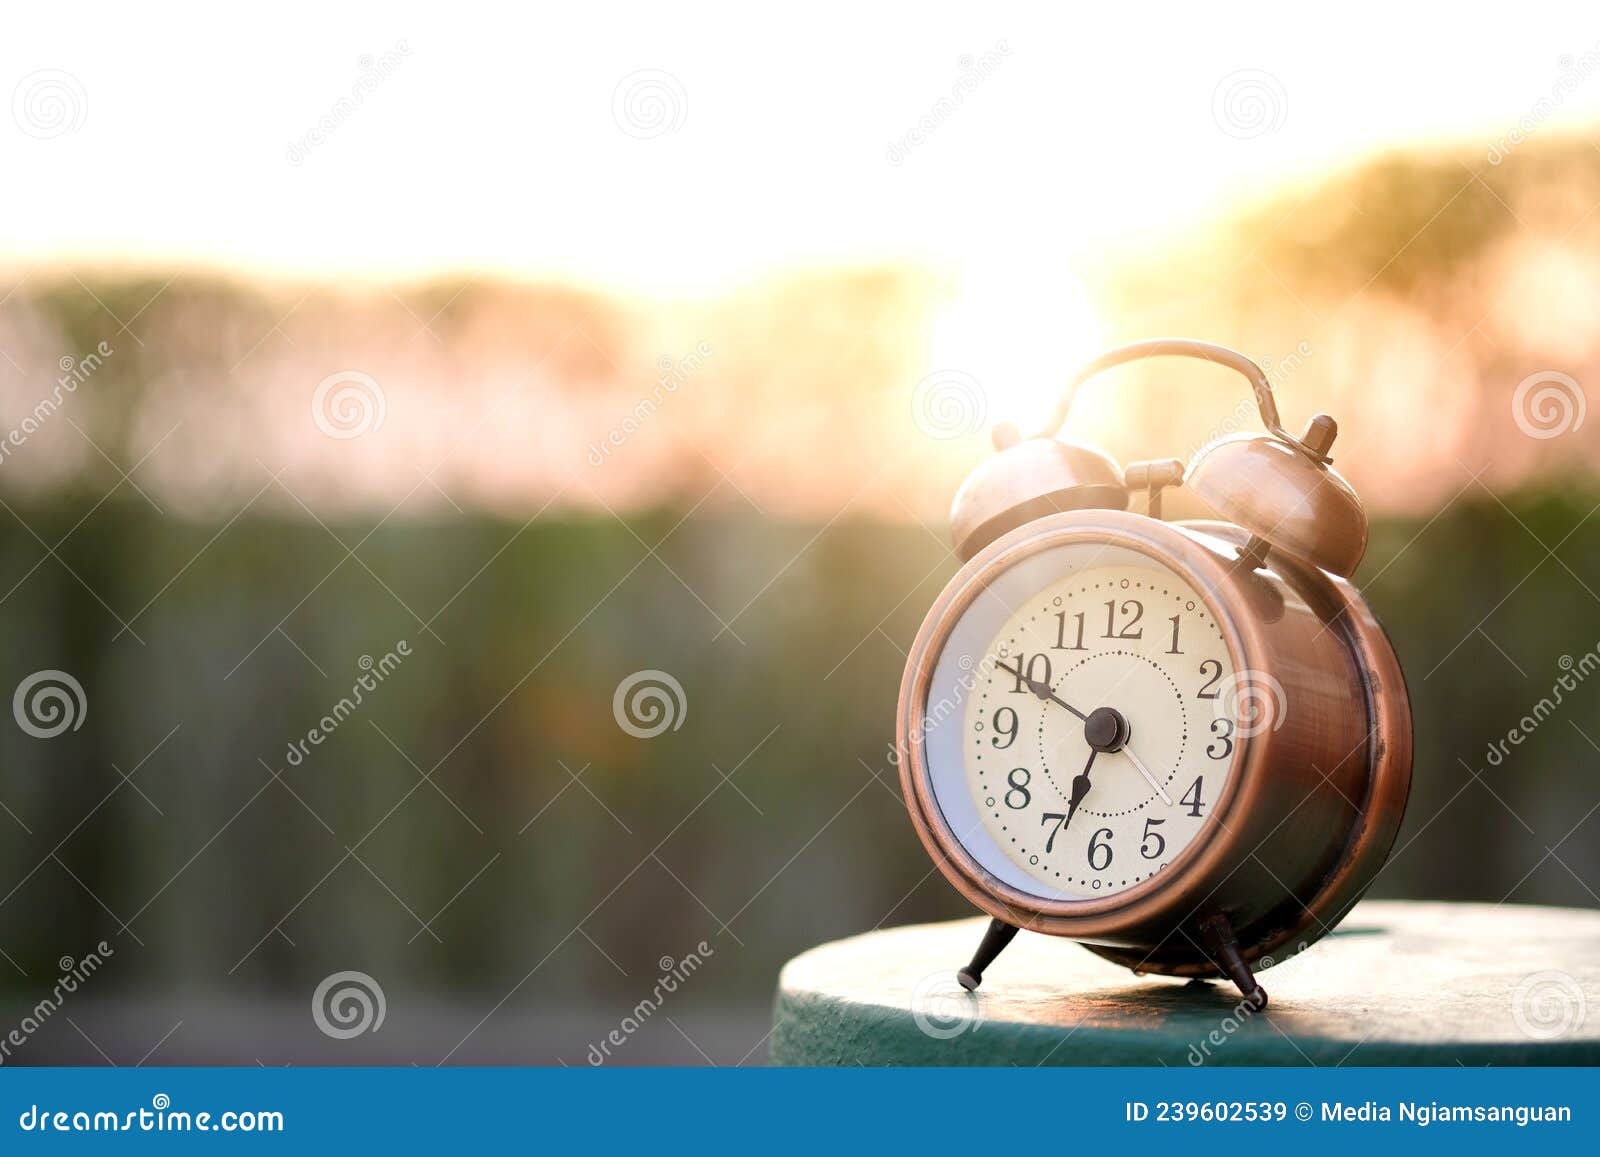 Mañana De Un Nuevo Día Despertador Sobre Fondo Natural Y Luz Solar Imagen  de archivo - Imagen de alarma, temprano: 239602539